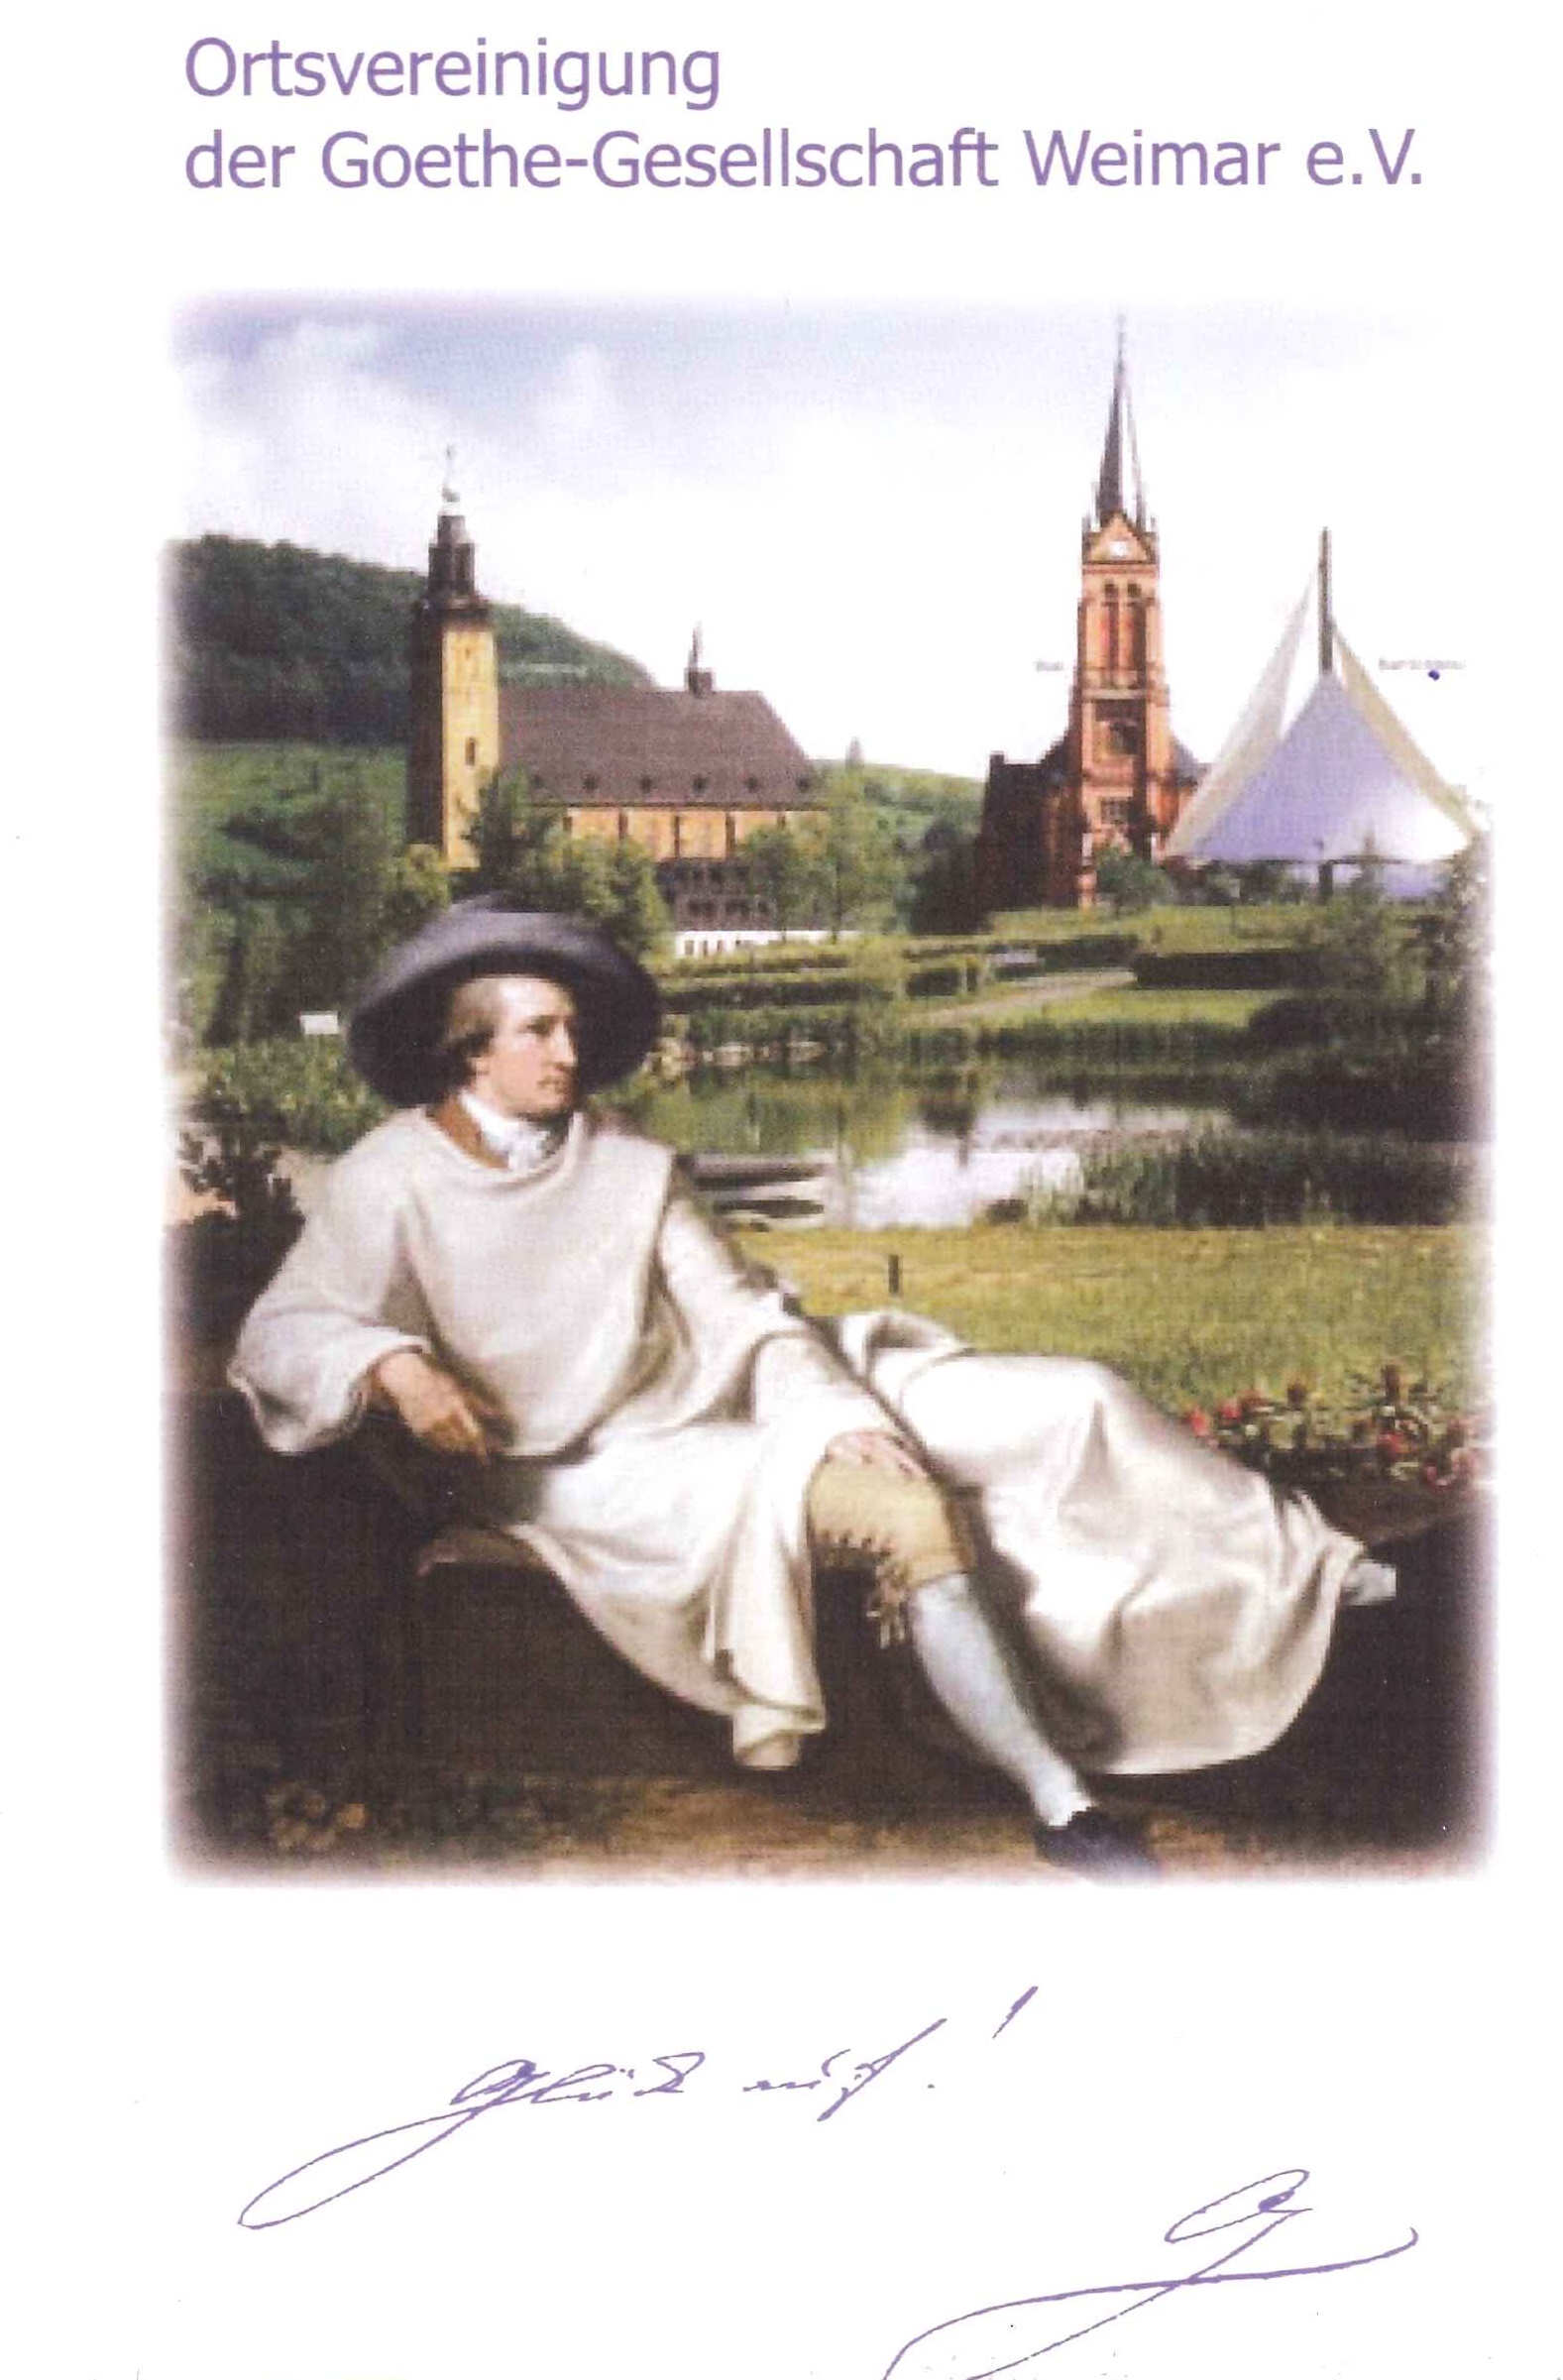 Goethe-Tradition im Westerzgebirge – 40 Jahre Ortsvereinigung Aue-Bad Schlema